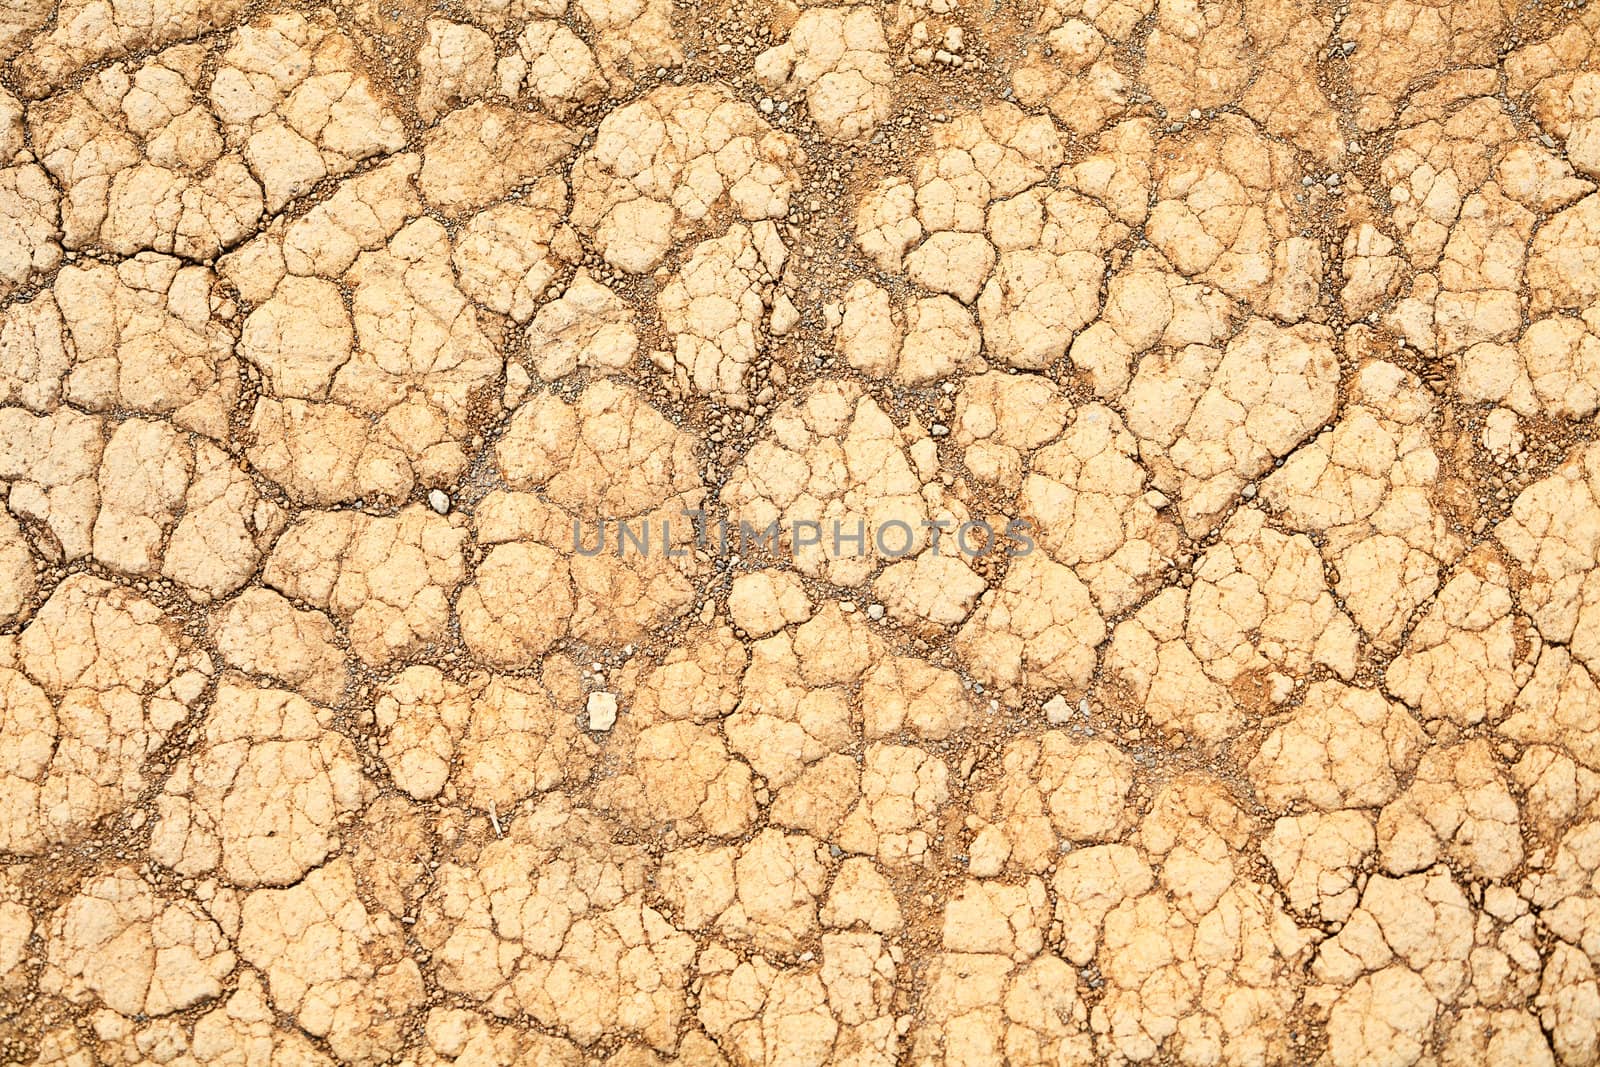 Desert sand texture background by Maridav